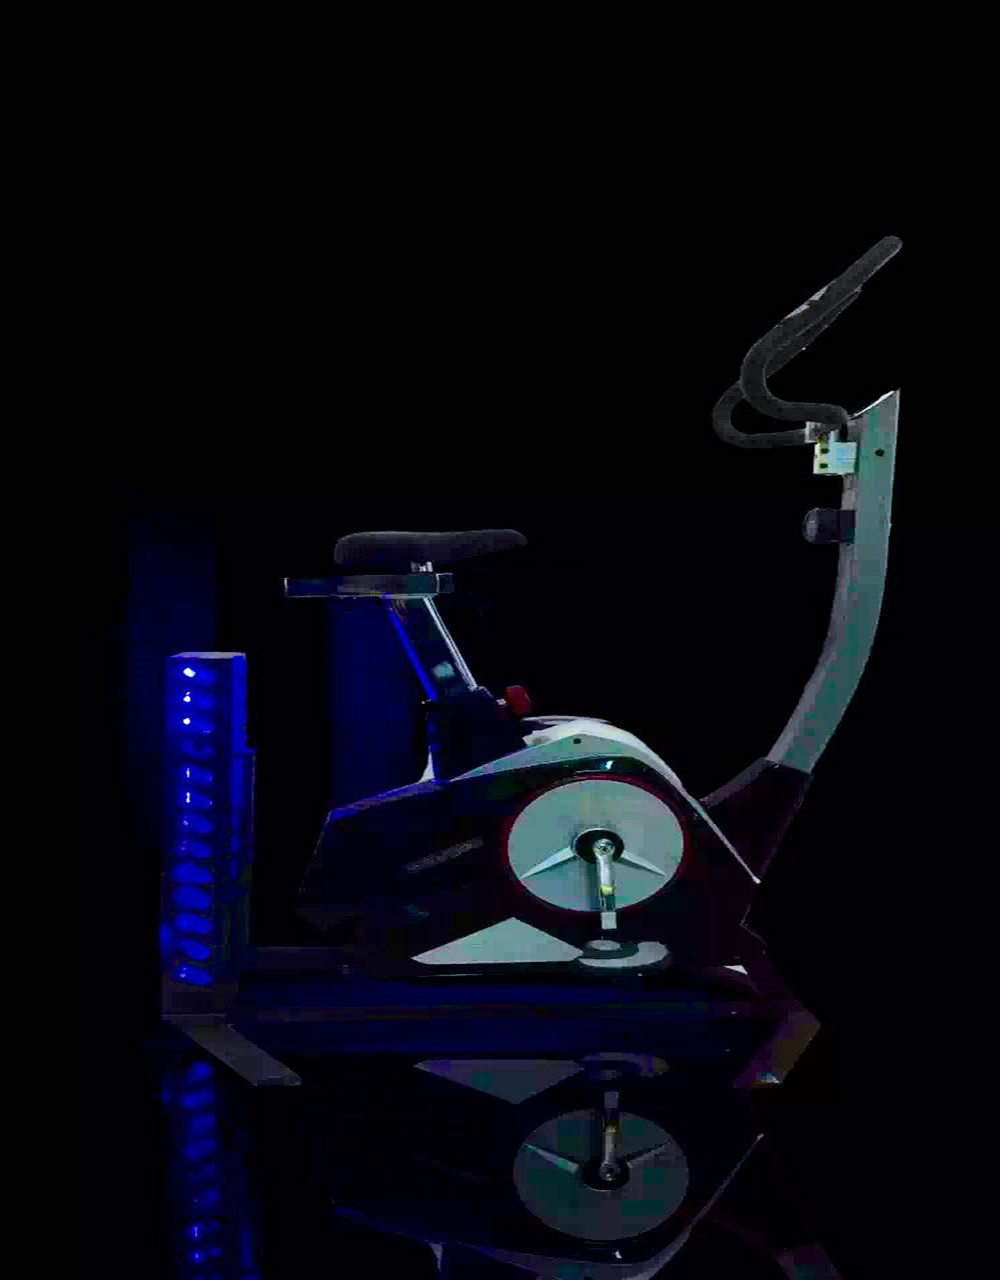 虚拟现实健身自行车 Vscope 虚拟现实体验馆 虚拟现实设备